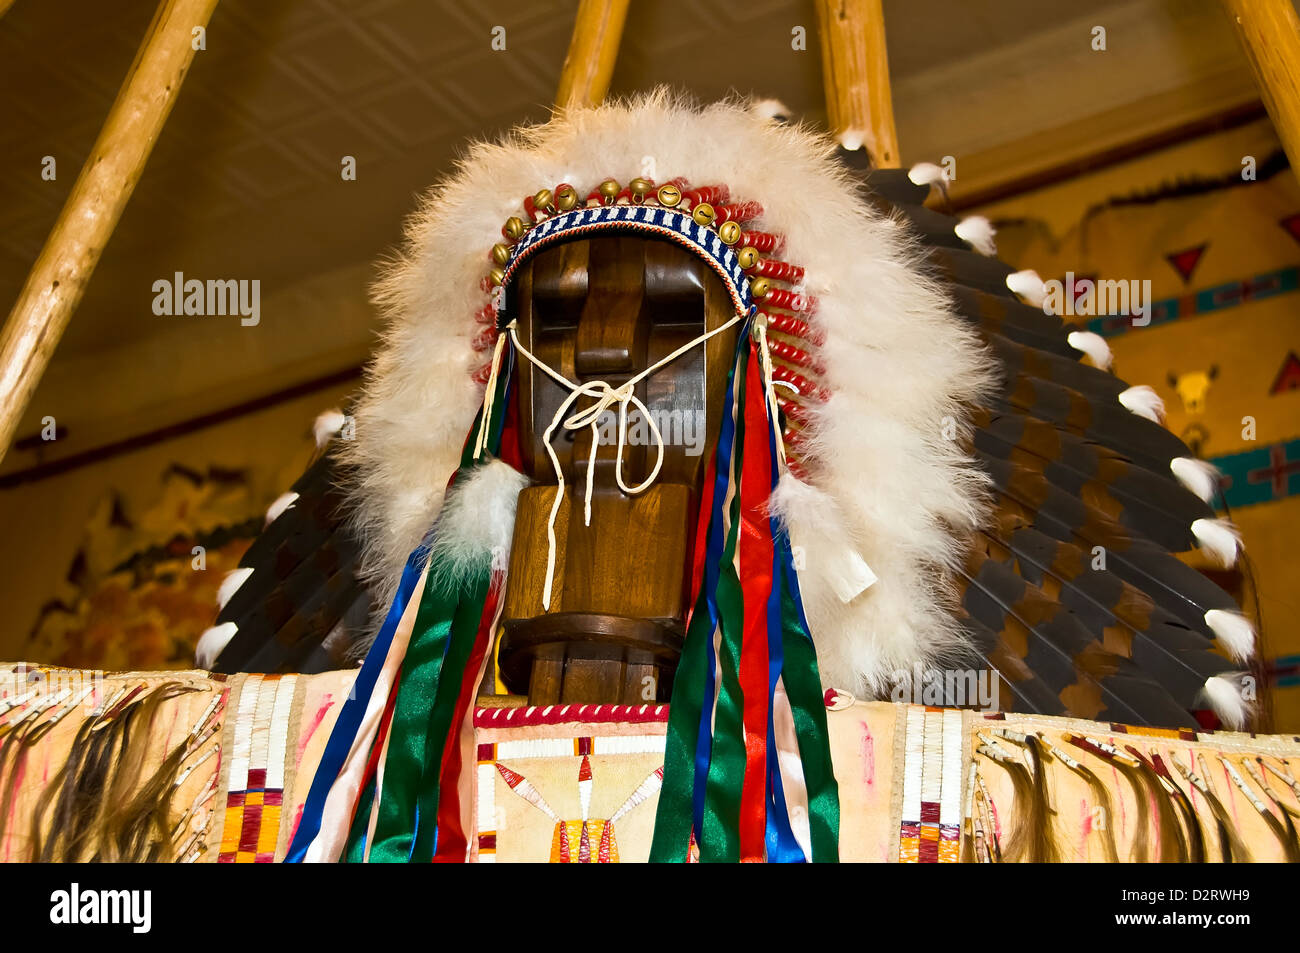 Les Indiens Navajo Native American war bonnet coiffe de plumes vendus comme souvenirs touristiques Rapid City dans le Dakota du Sud Banque D'Images